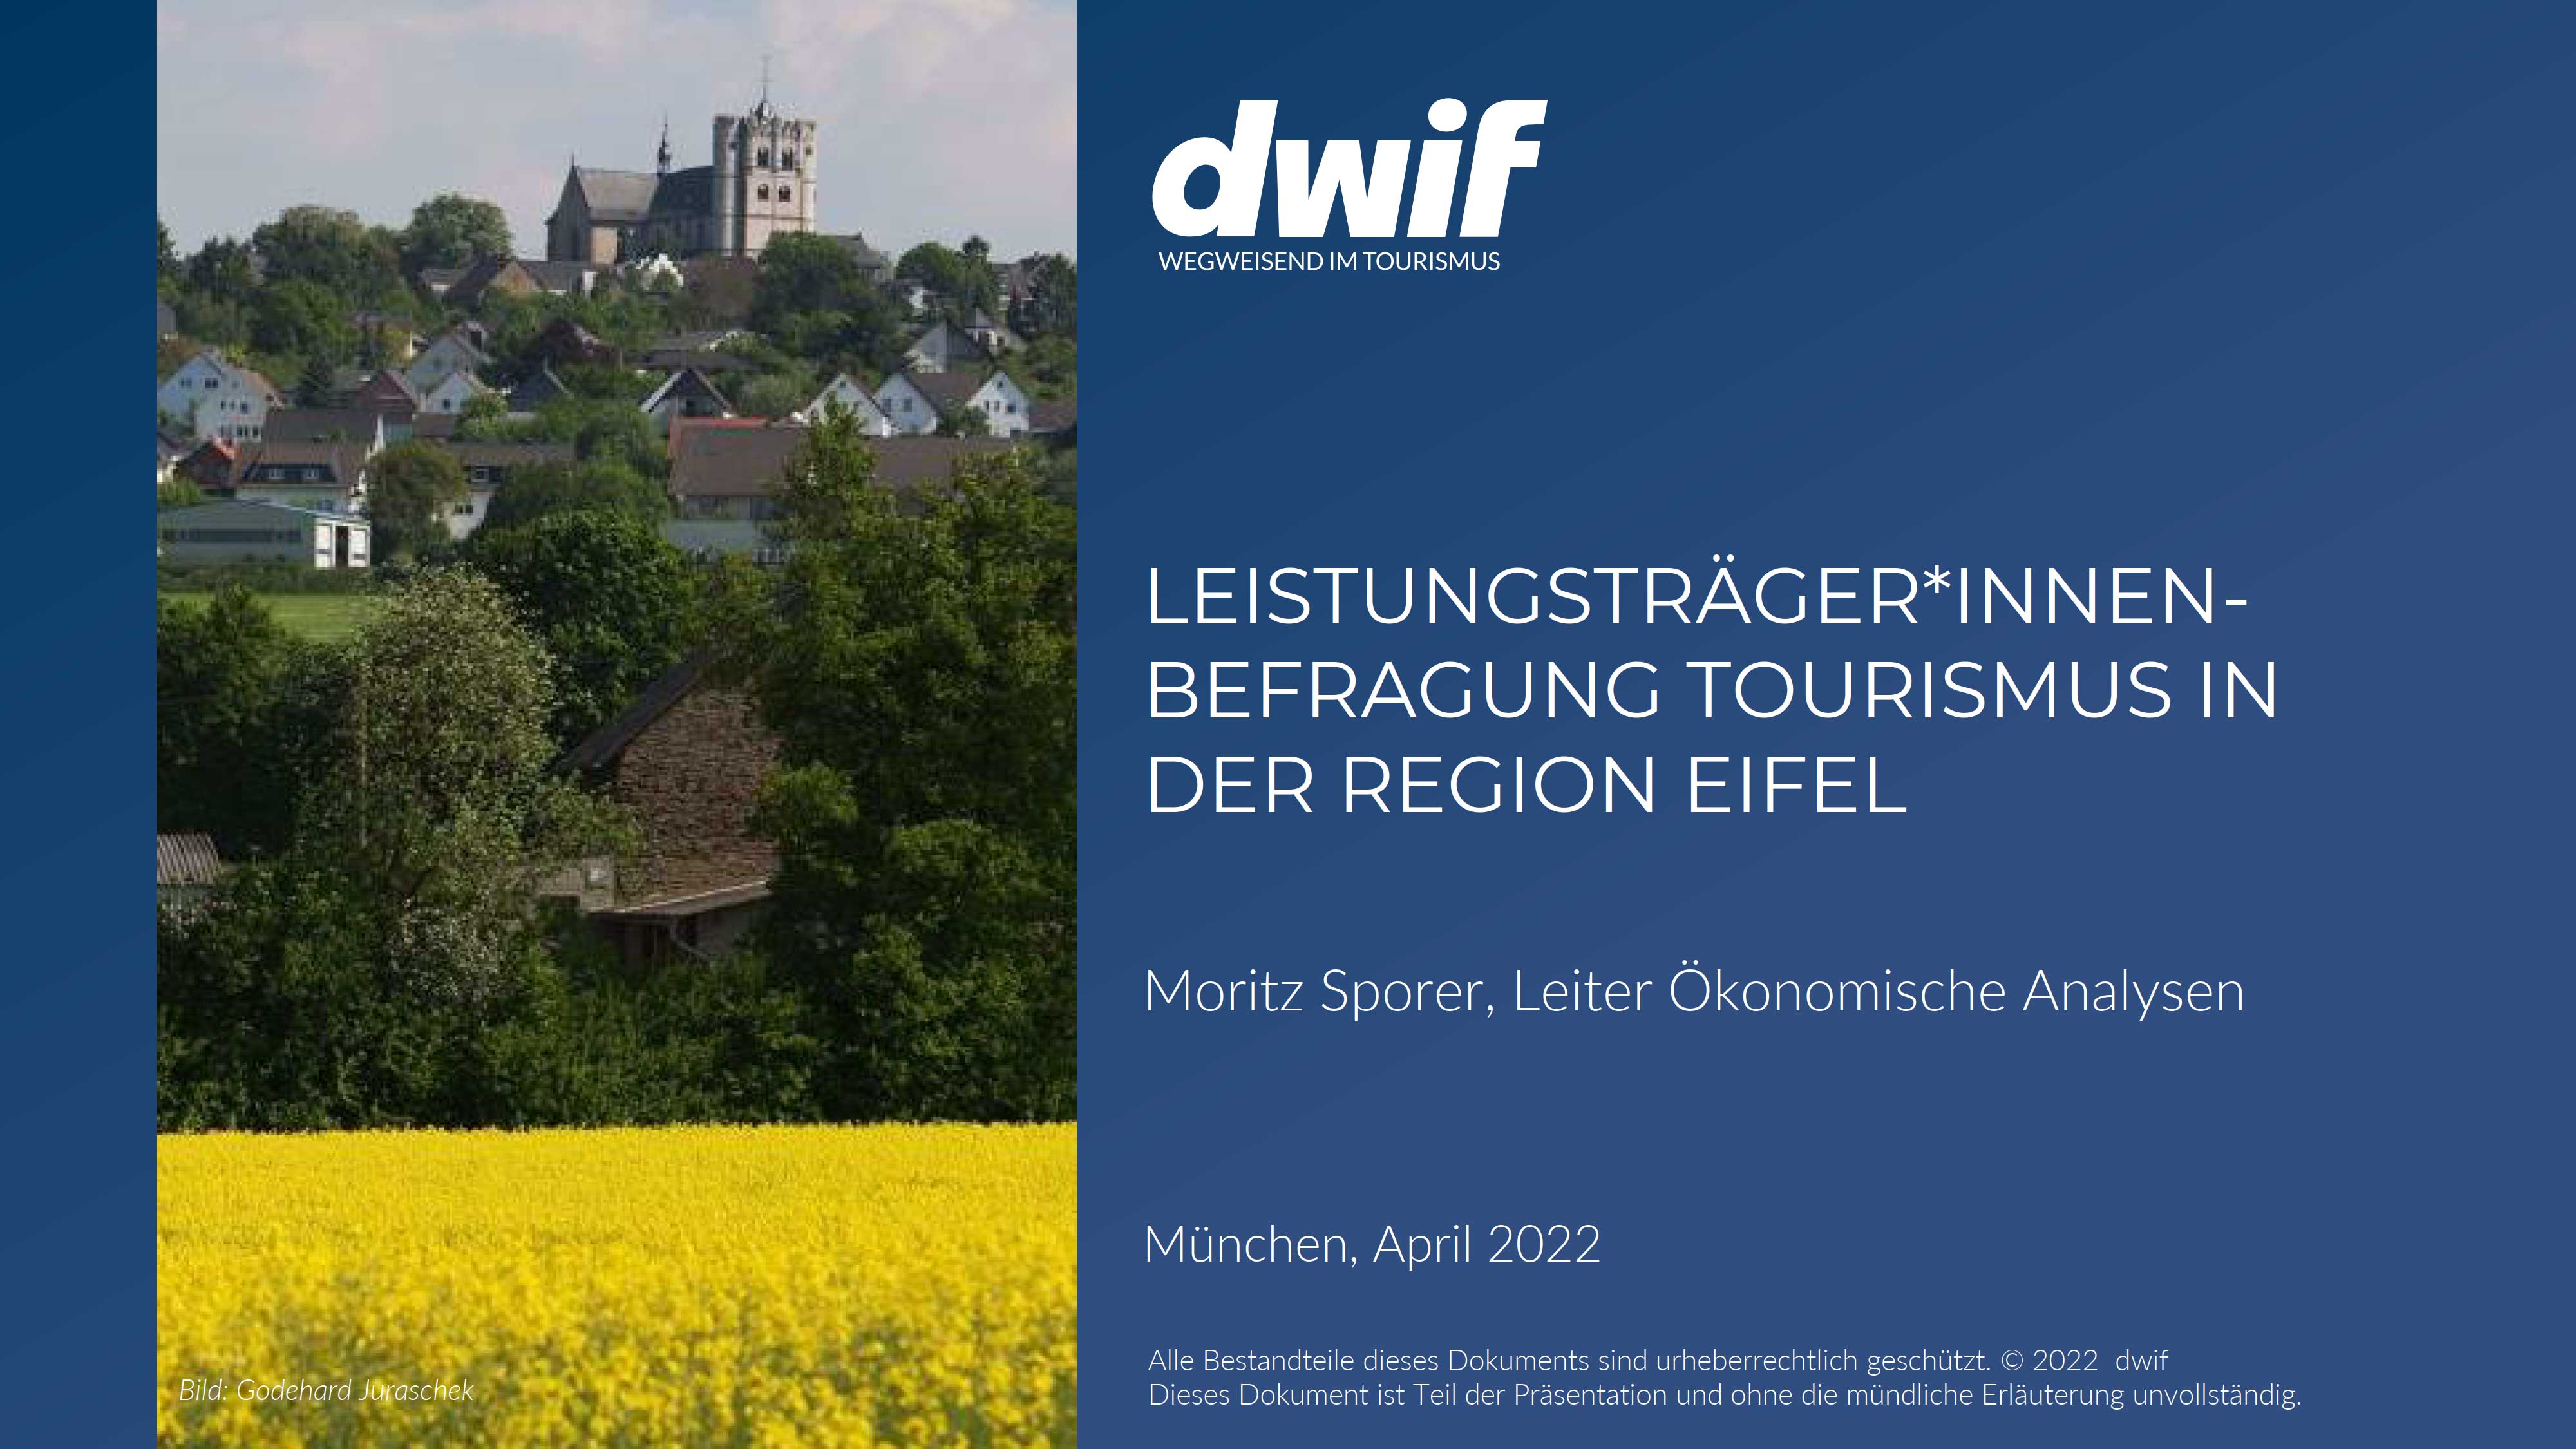 dwif Befragung der touristischen Betriebe in der Eifel